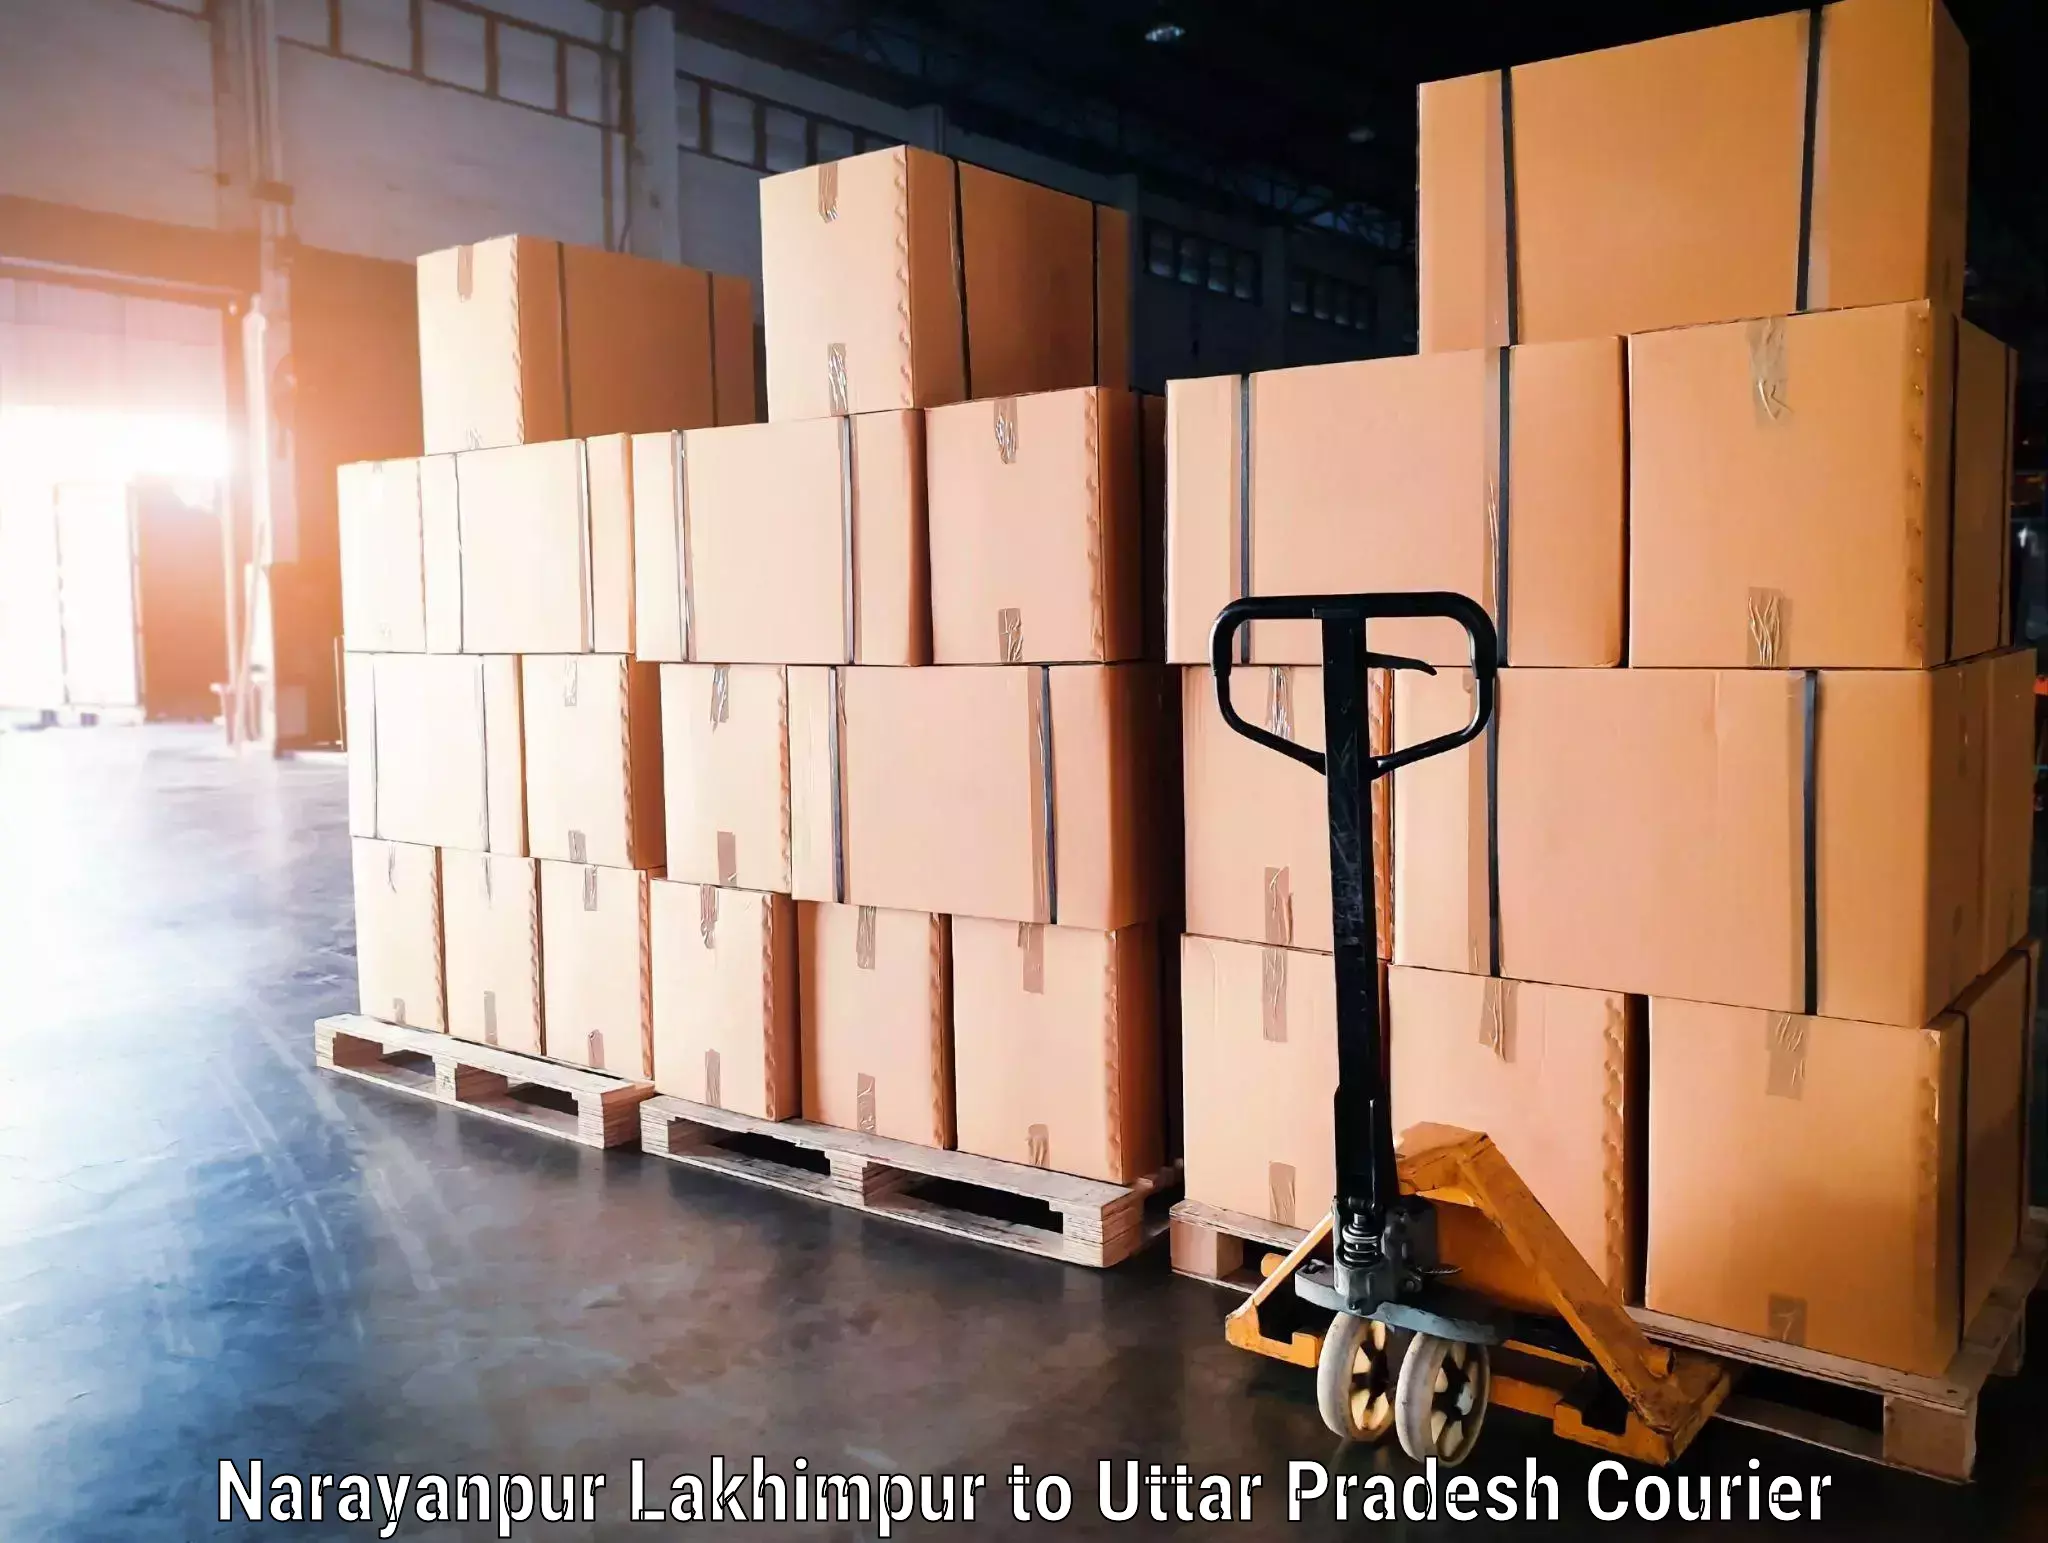 Baggage transport management Narayanpur Lakhimpur to Dhaurahara